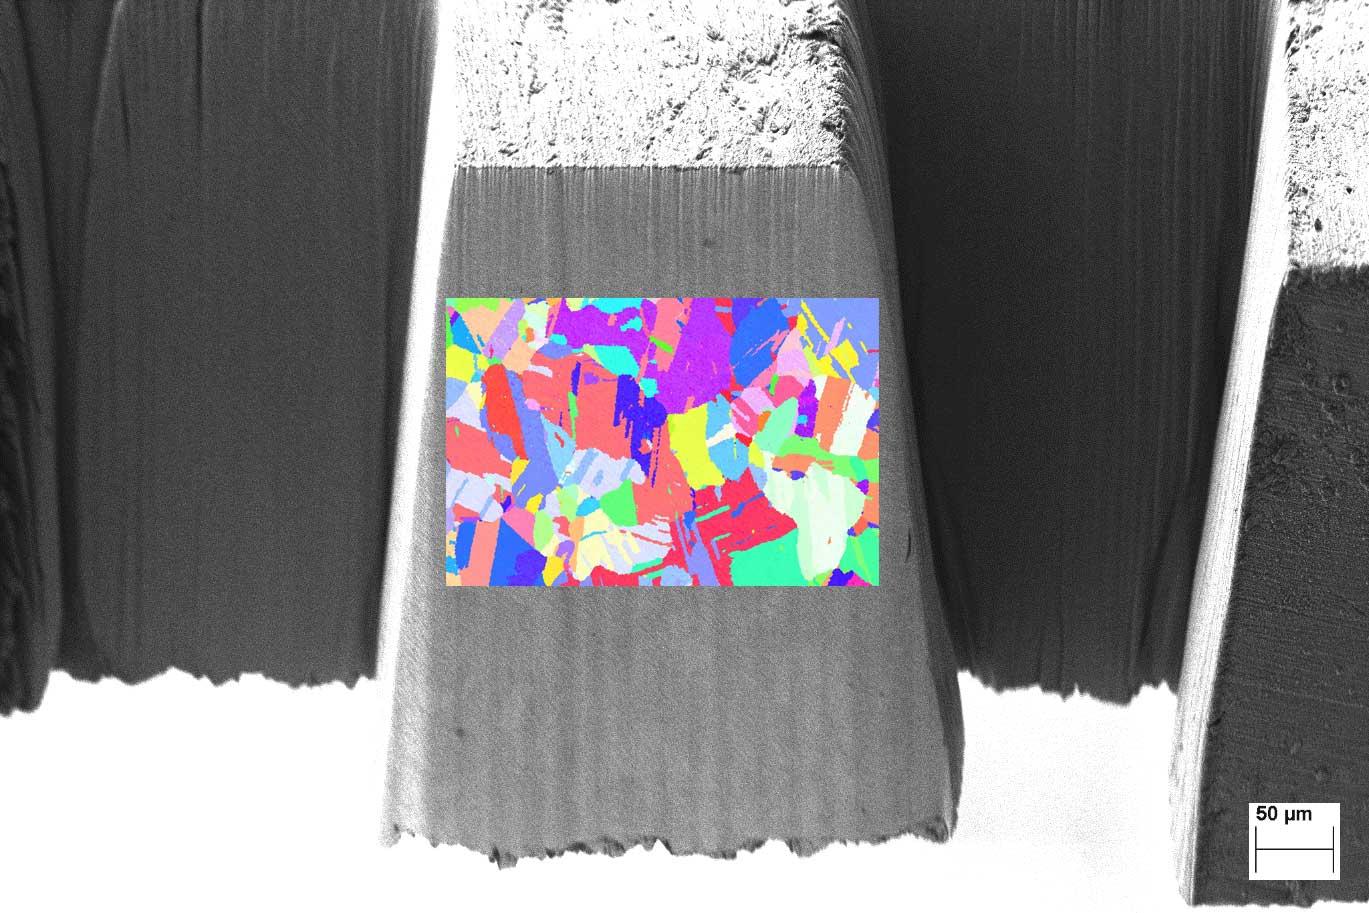 600合金板材的激光制备表面，在激光切割表面上叠加了EBSD图。样品使用Crossbeam LaserFIB制备和成像。